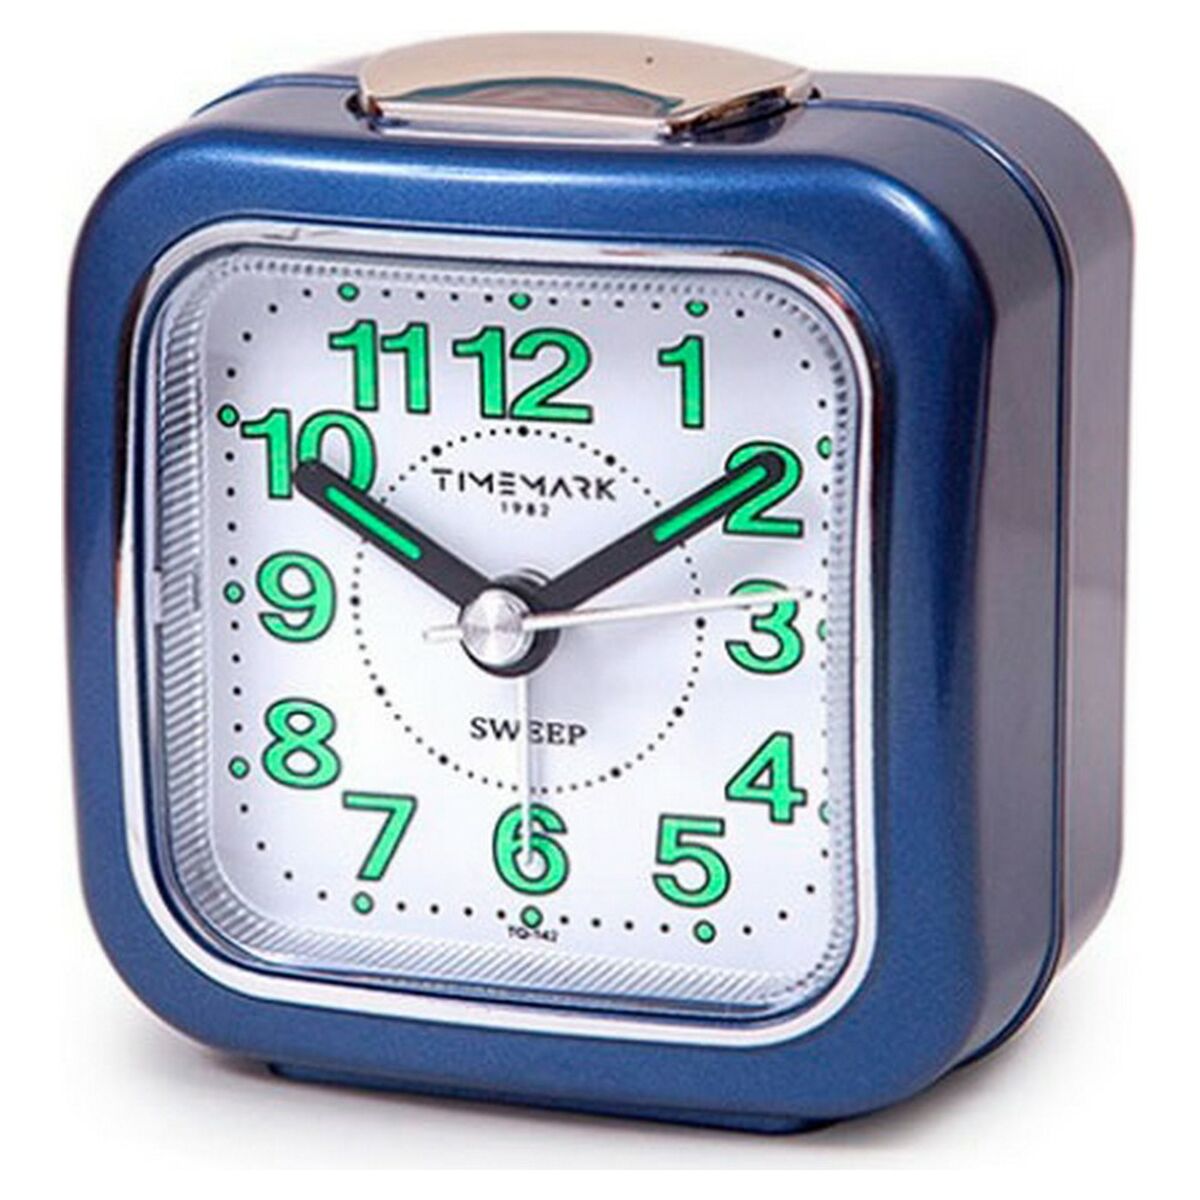 Réveil Analogique Timemark Bleu (7.5 x 8 x 4.5 cm)